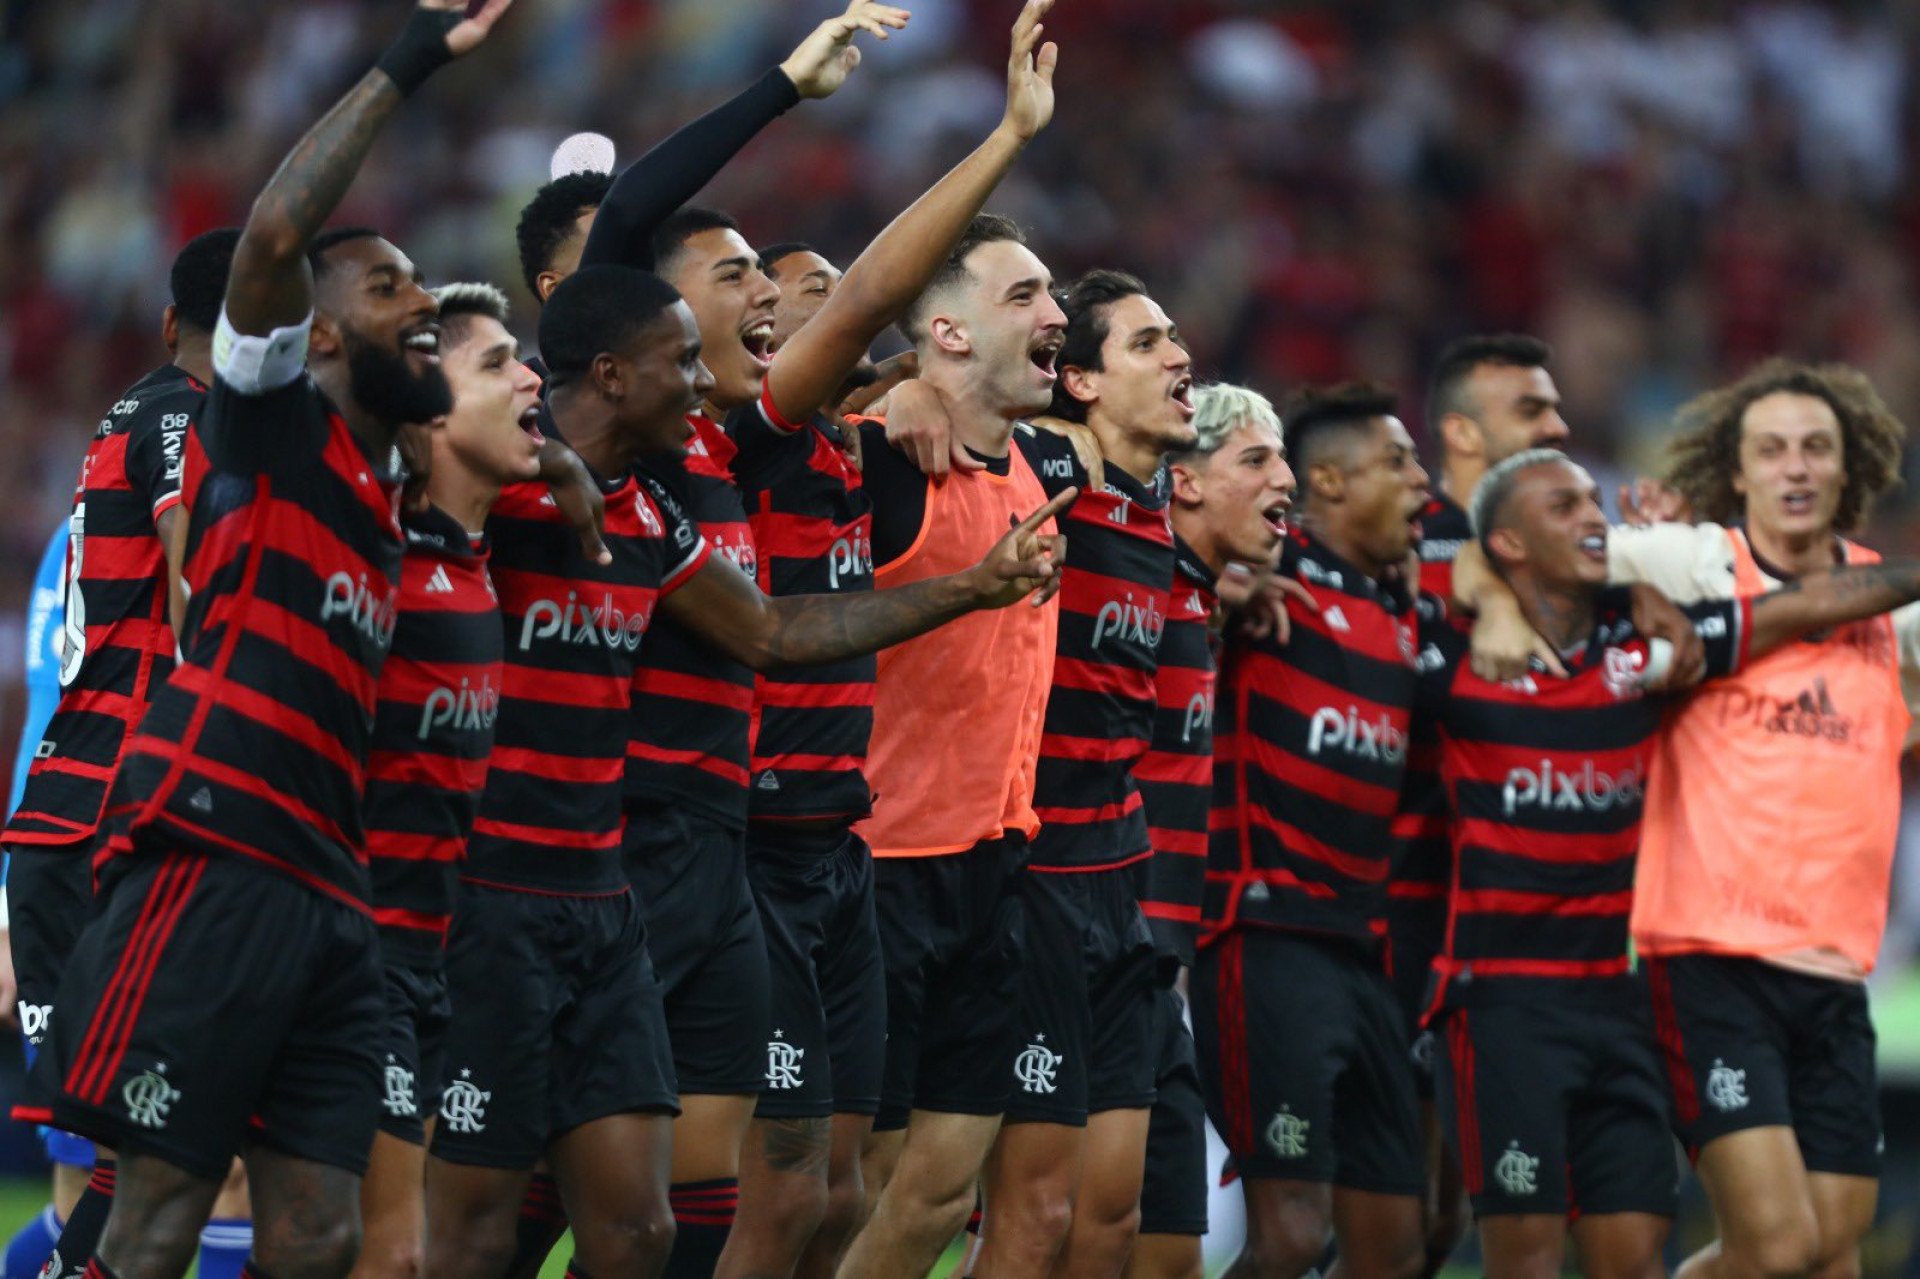 Jogadores do Flamengo celebraram com a torcida após vitória sobre o Fluminense - Gilvan de Souza / CRF